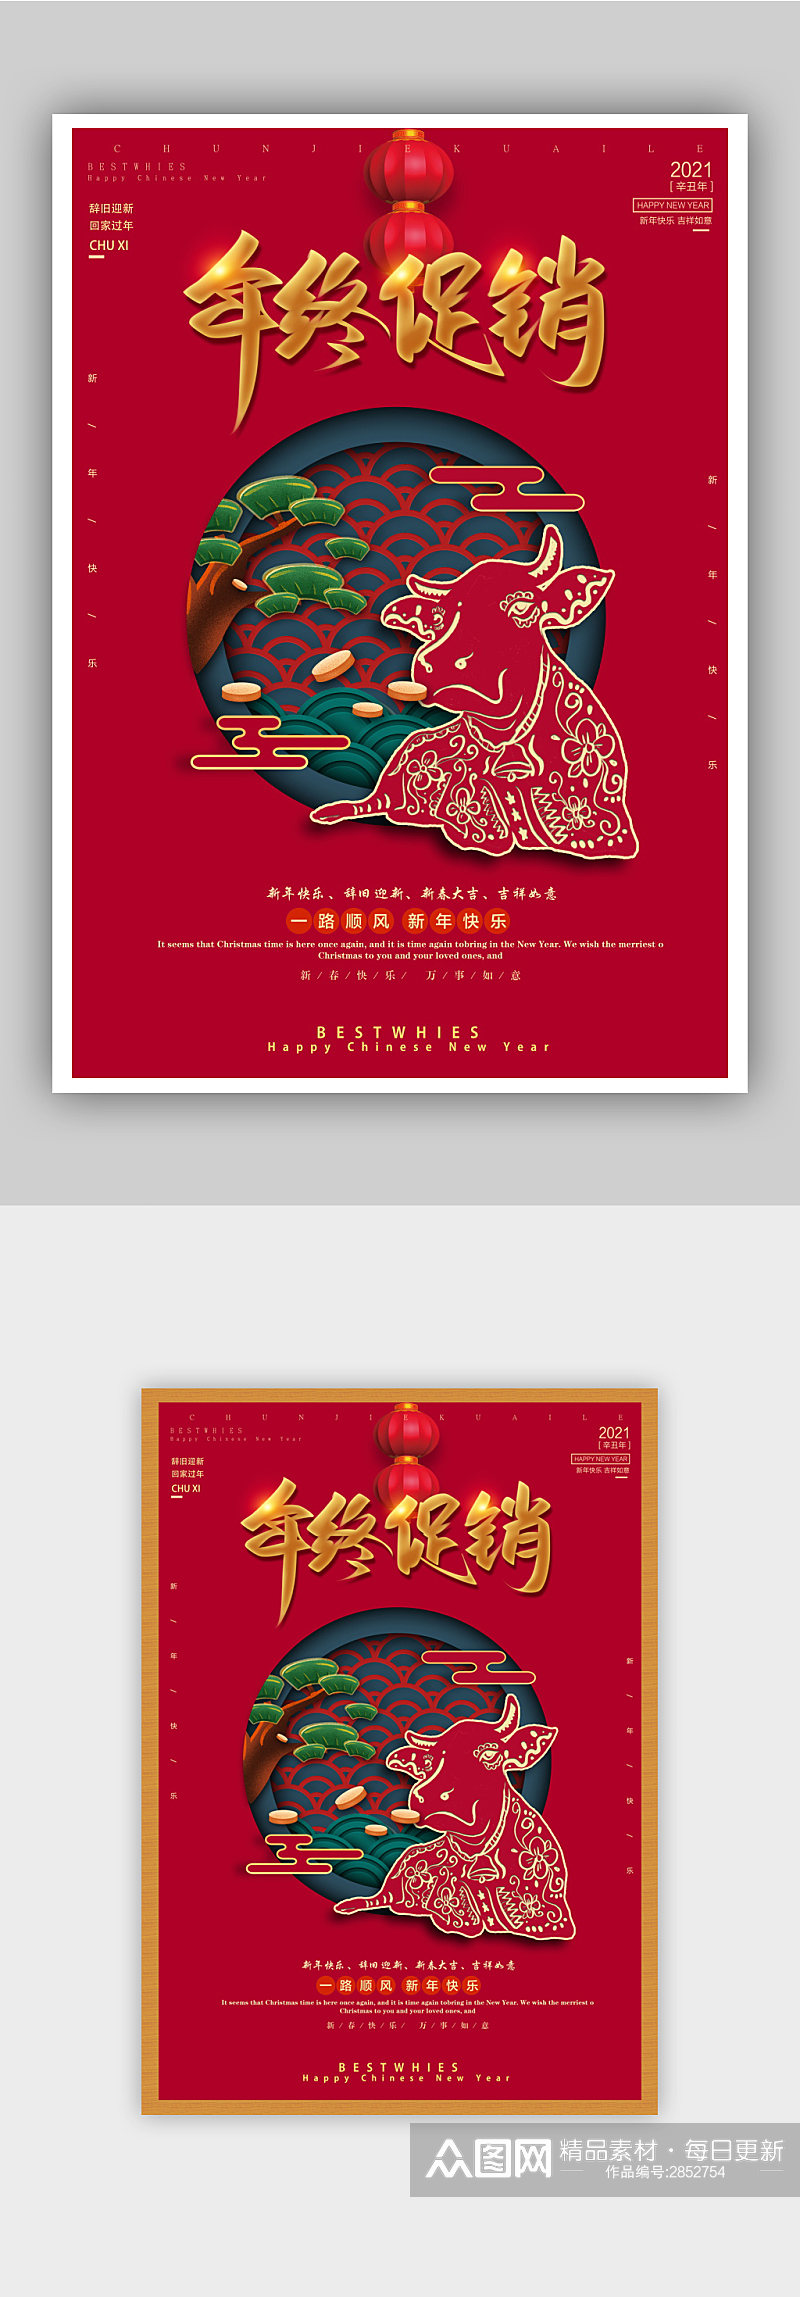 红色喜庆年终促销宣传海报模板1素材